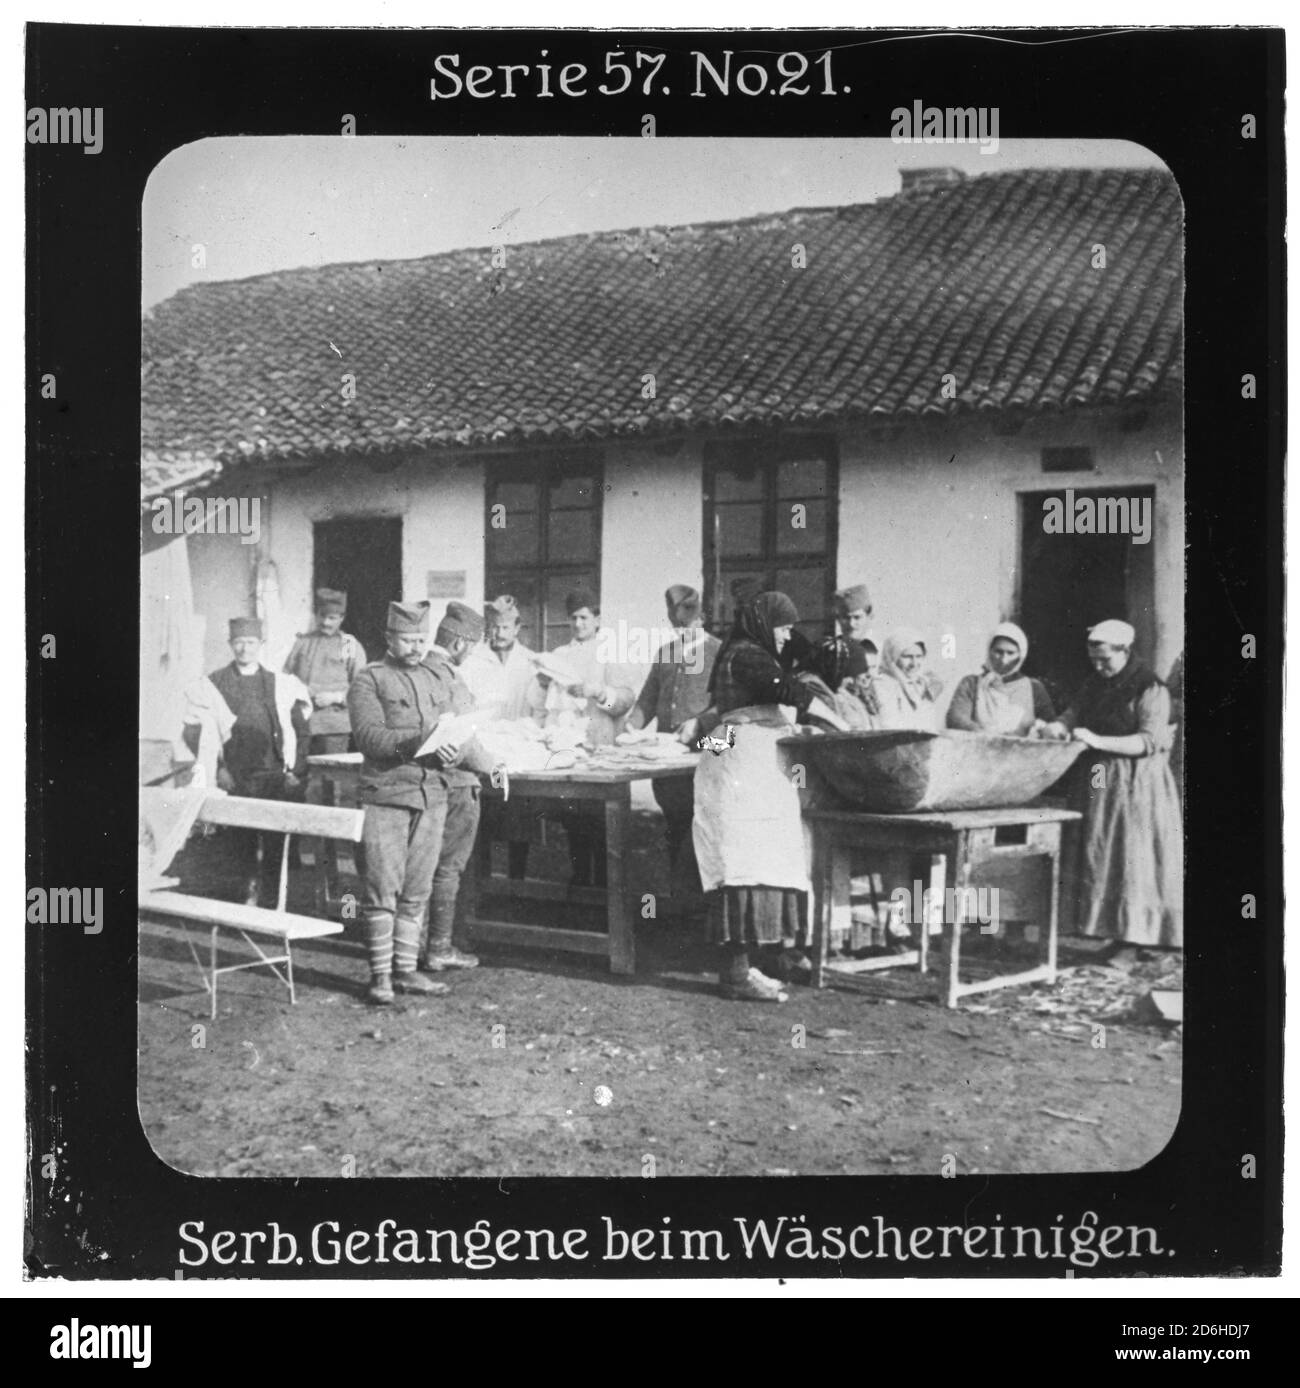 Proiezione für alle - Die Eroberung Serbiens. Serie 57. N. 21. Serbische Gefangene beim Wäschereinigen. Nach dem Scheitern des Serbienfeldzugs der k.u.k. Armee im Jahr 1914 wurde im Oktober 1915 mit Massiver deutscher Unterstützung ein neuer Feldzug durchgeführt. Die Firma „Projection für alle" wurde 1905 von Max Skladanowsky (1861-1939) gegründet. Sie produzierte bis 1928 fast 100 Serien zu je 24 Glasdias im Format 8,3 x 8,3 cm im sog. Bromsilber-gelatina-Trockenplatten Verfahren. Die Serien umfassten Städte, Länder, Landschaften, Märchen und Sagen, das Alte Testamento u. den 1. Weltkrieg. Foto Stock